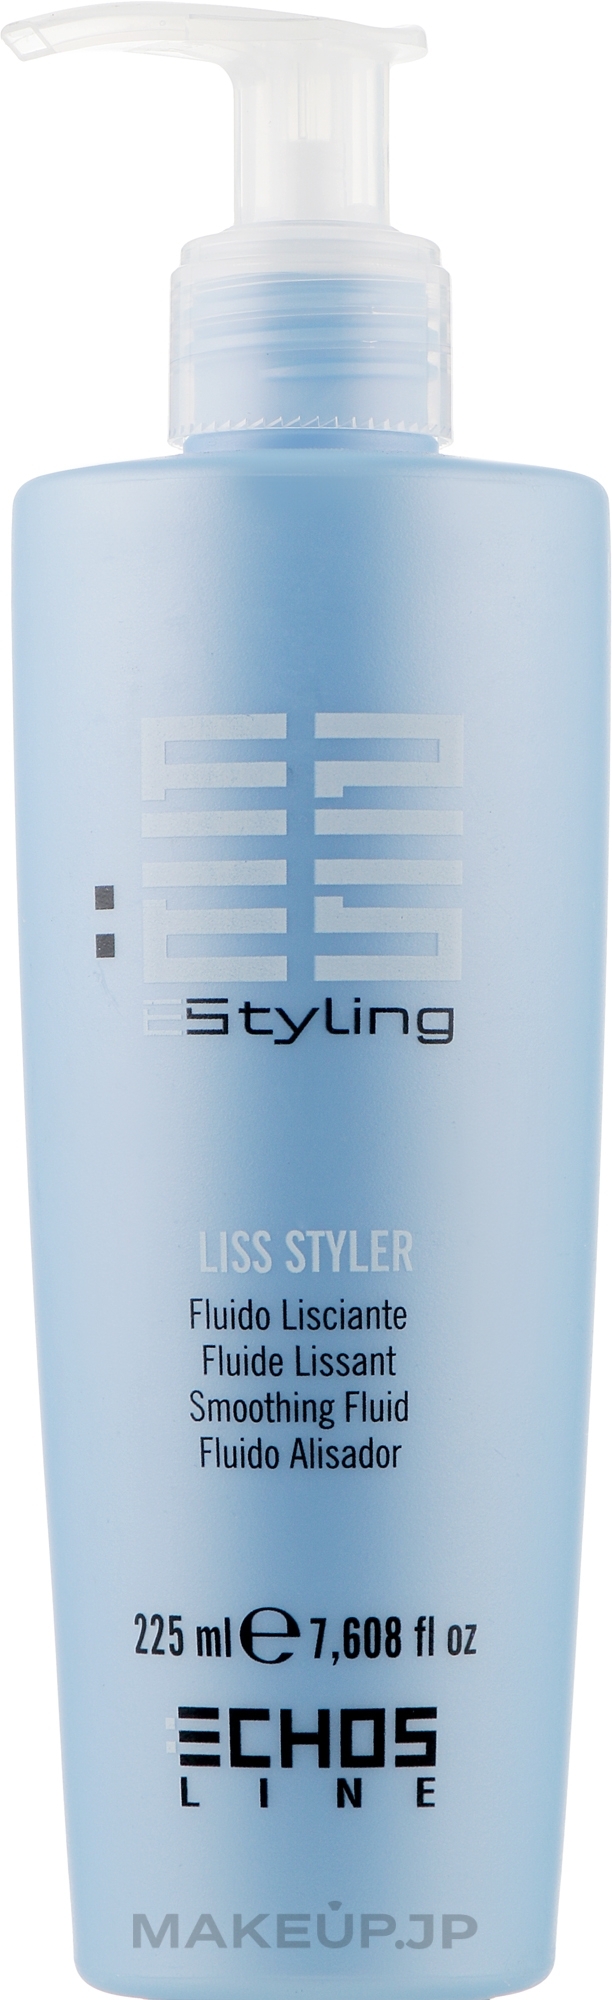 Leveling Fluid - Echosline Styling Liss Styler Fluid — photo 225 ml